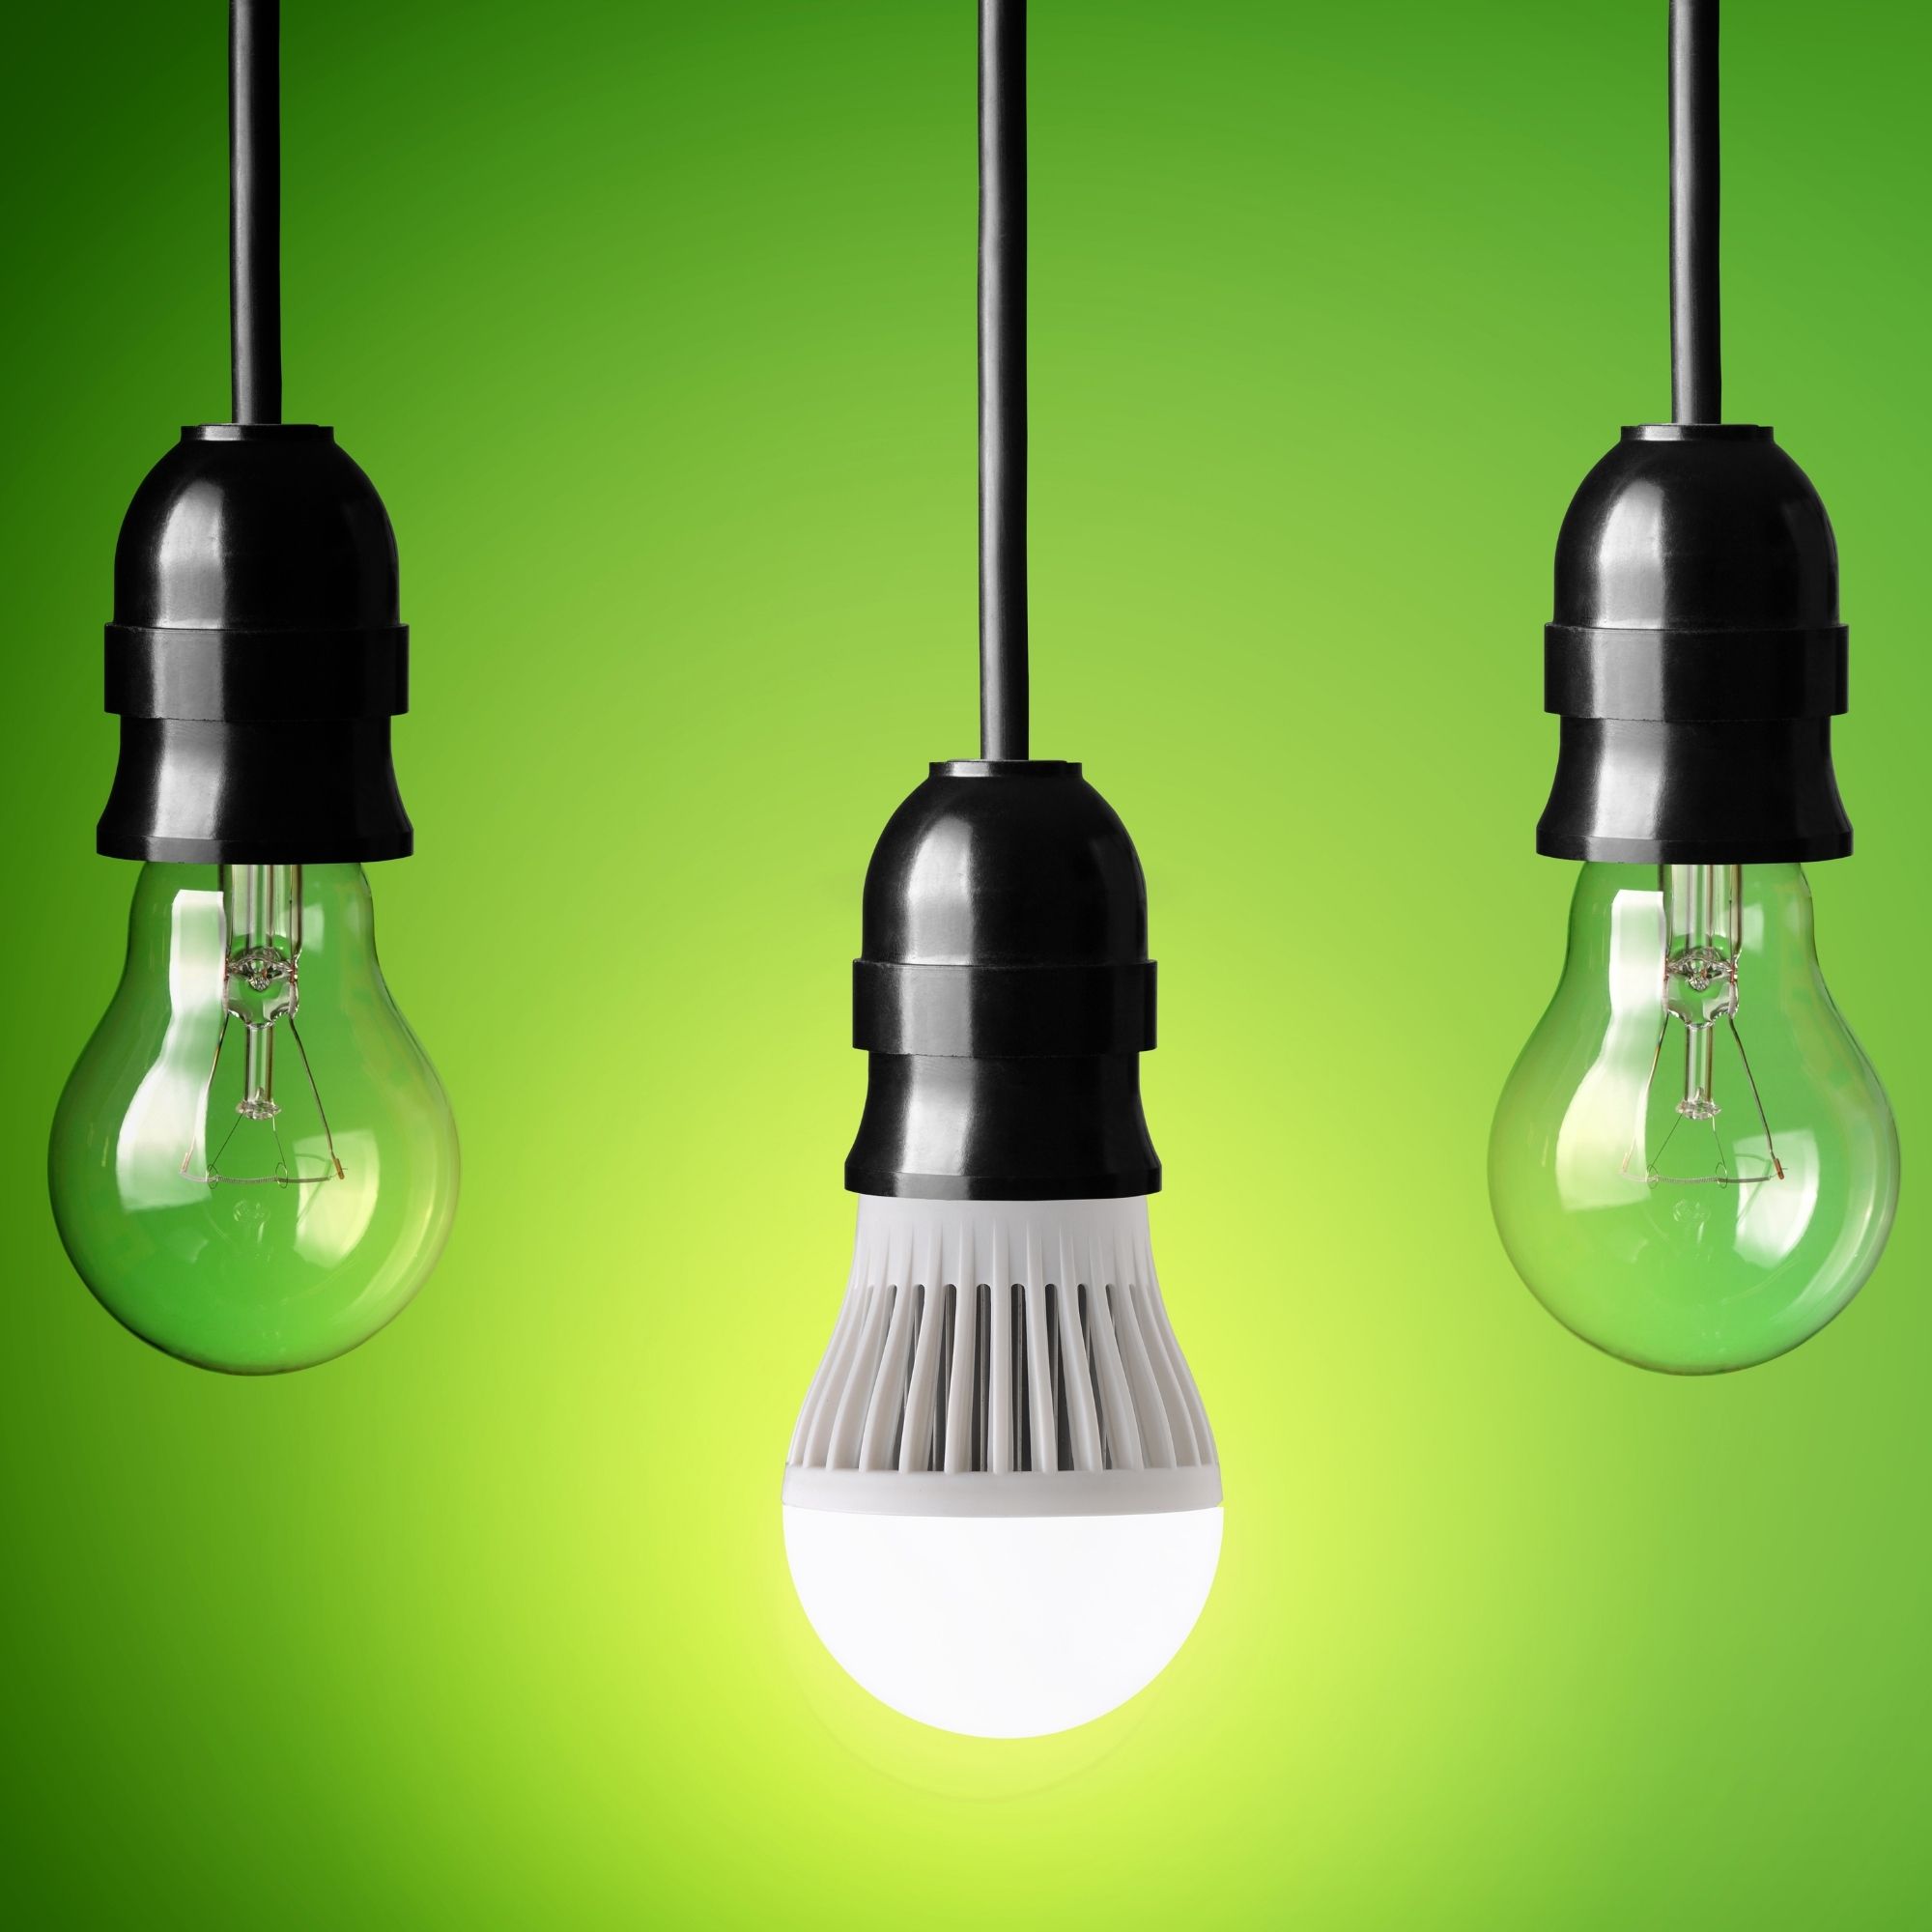 LED-Lampen sind plötzlich weniger energieeffizient –